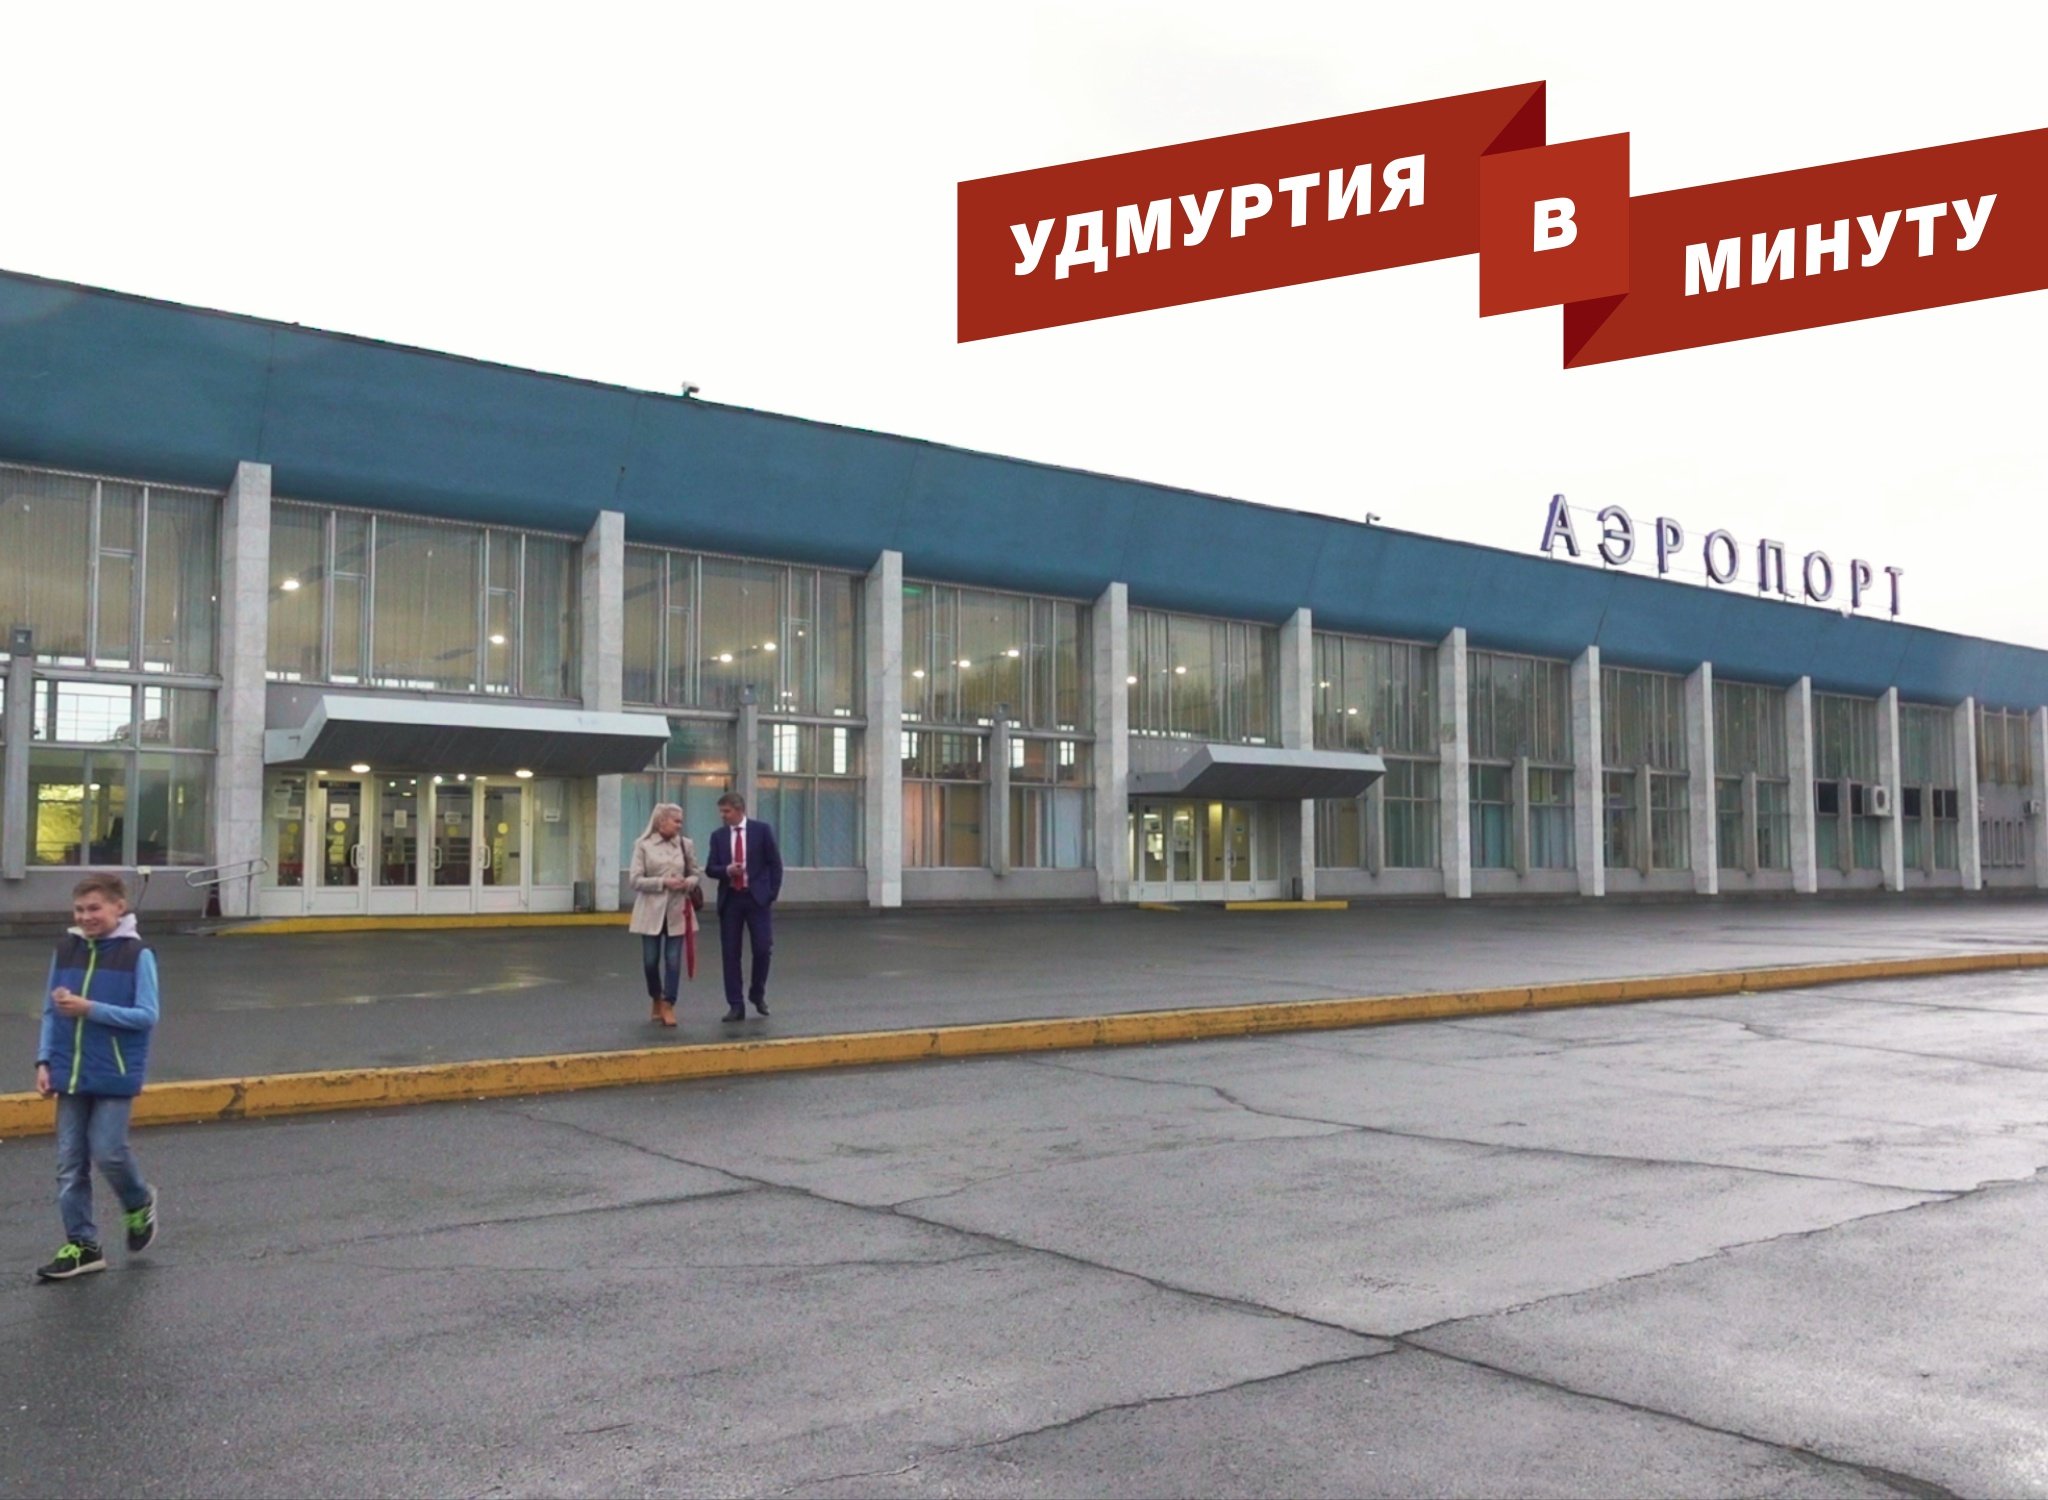 Аэропорт Ижевск. Удмуртская Республика Ижевск аэропорт. Новый аэропорт Ижевск. Аэропорт Ижевск сейчас.